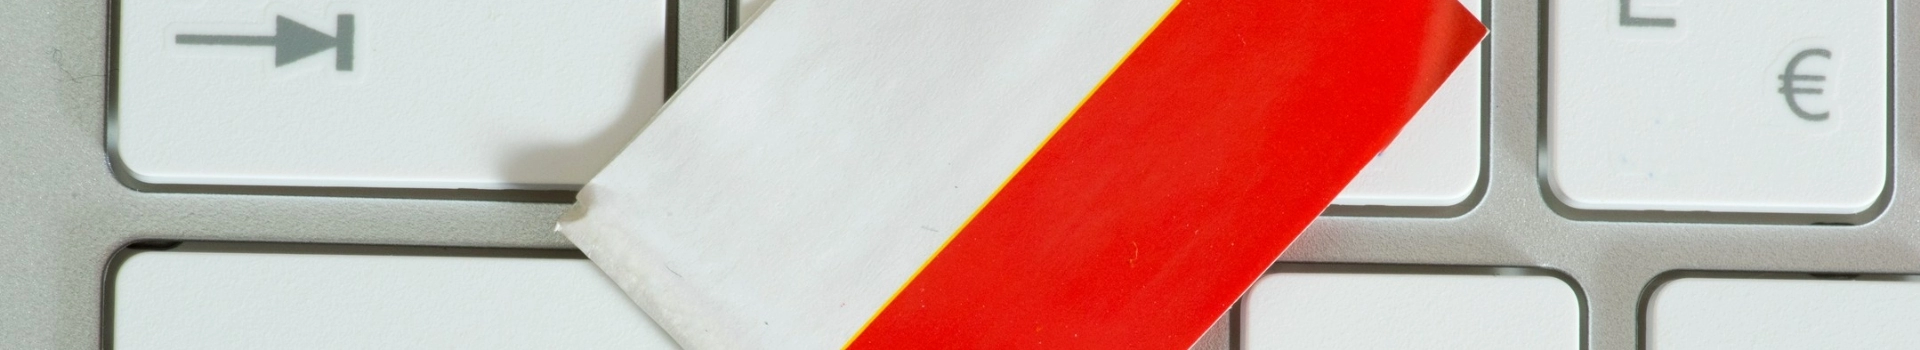 Flaga Polski na klawiaturze